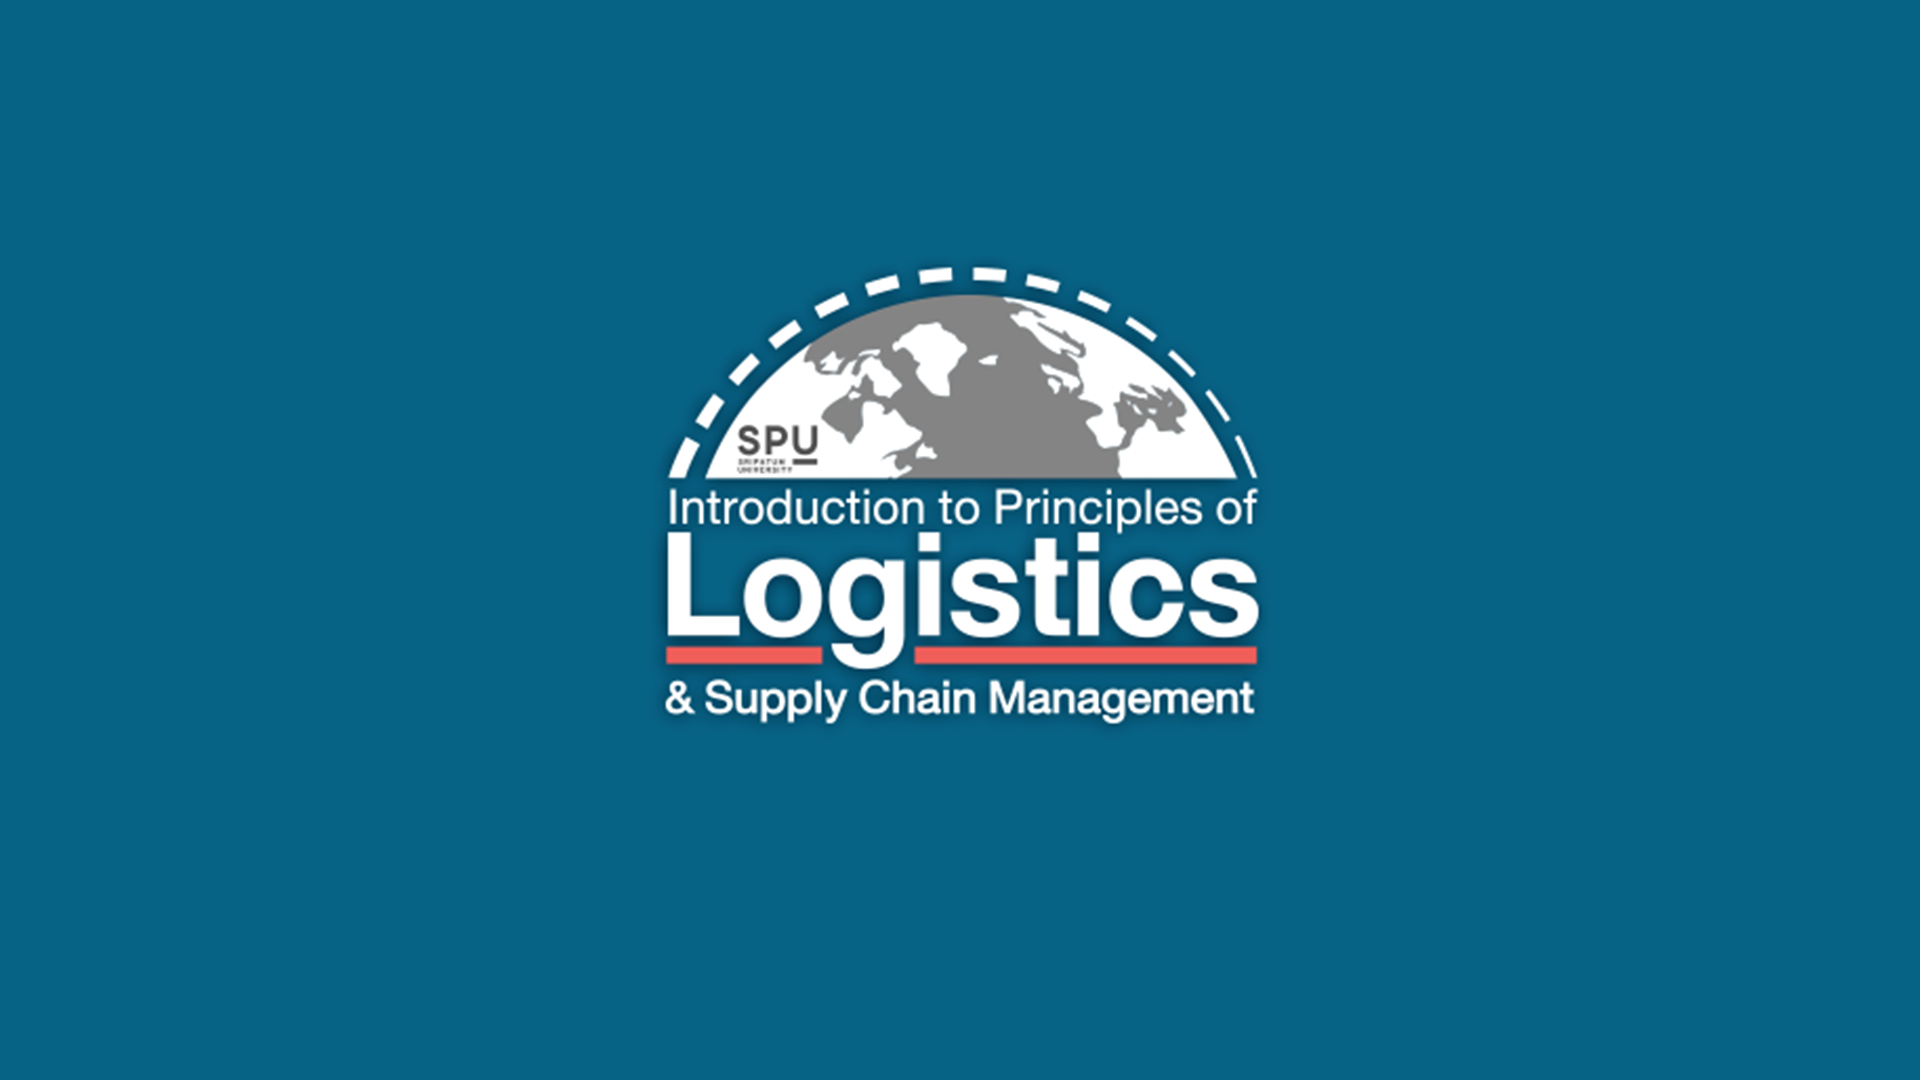 โลจิสติกส์และโซ่อุปทานเบื้องต้น | Introduction to Principles of Logistics and Supply Chain Management